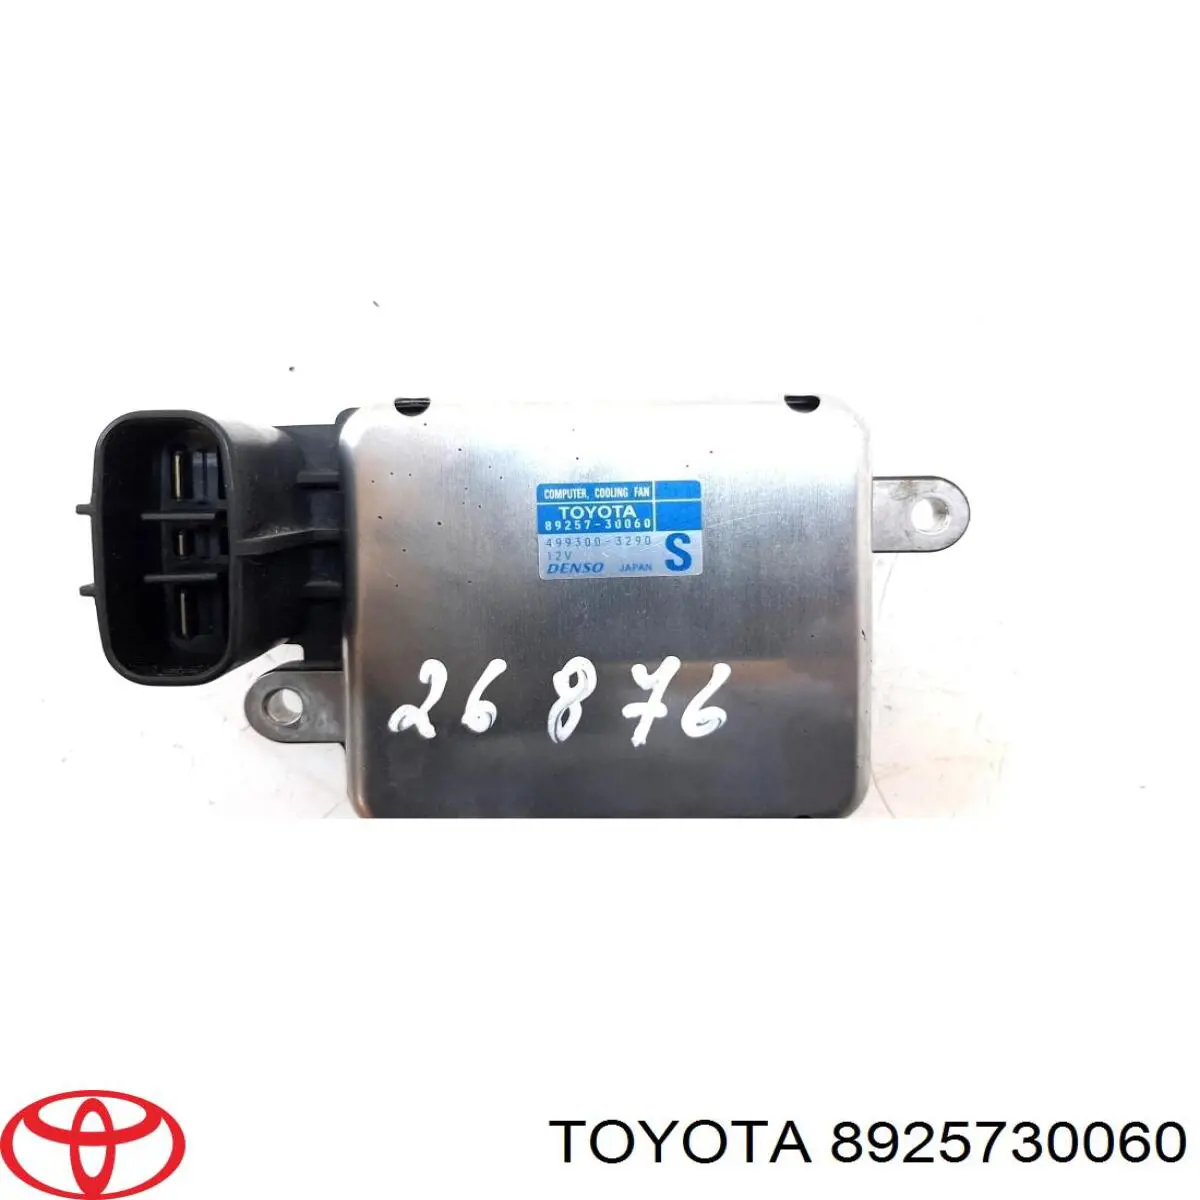 Регулятор оборотов ТНВД Toyota 8925730060